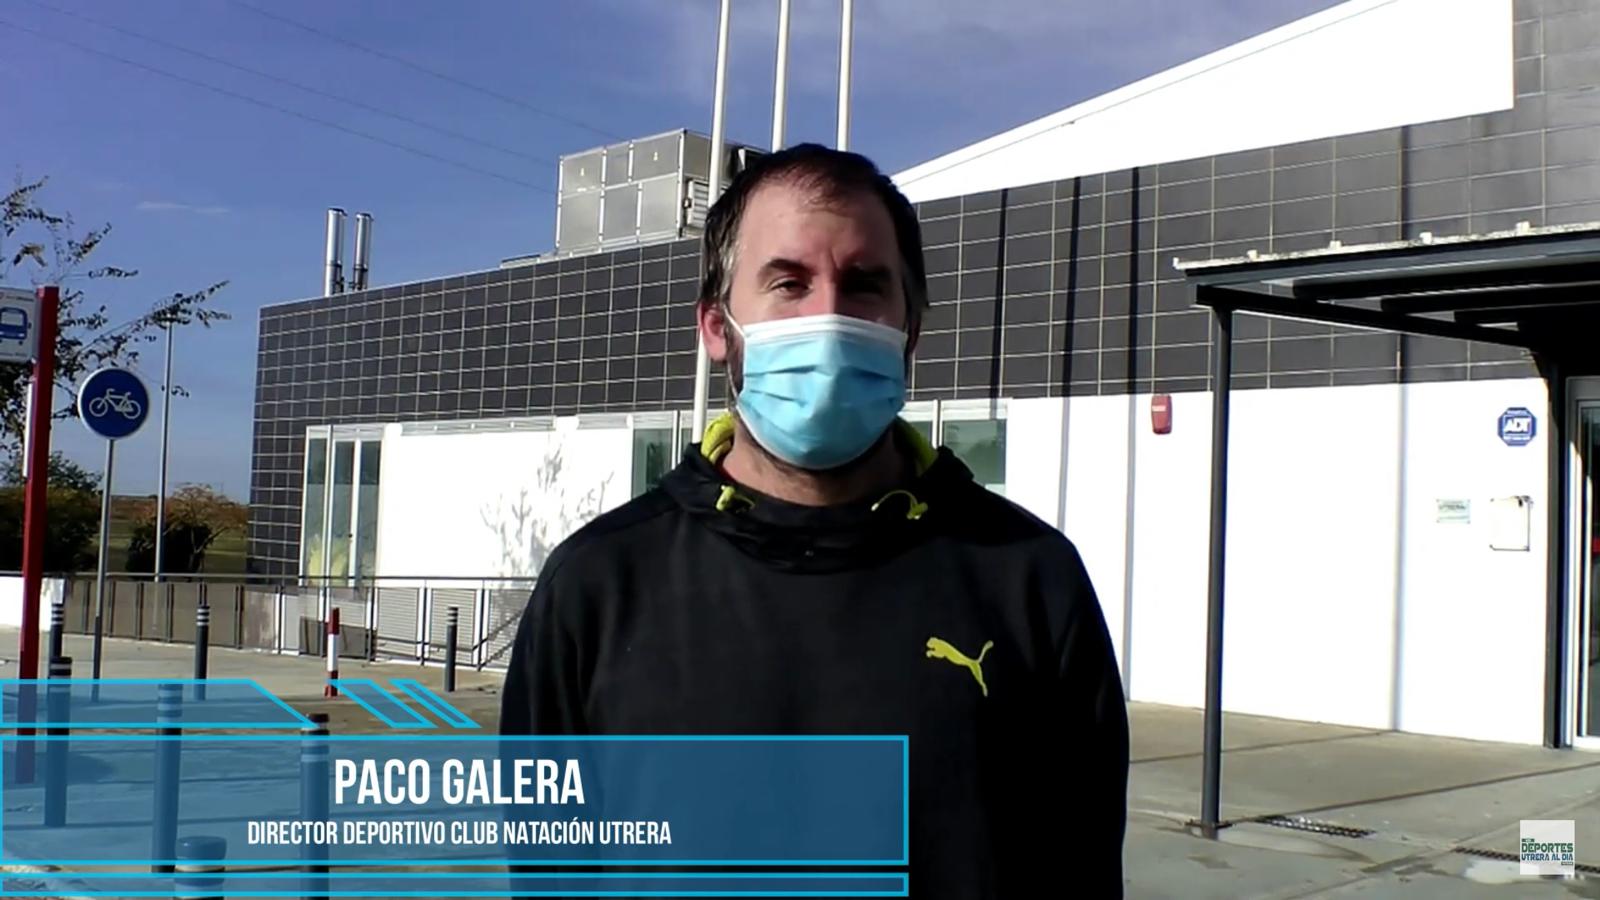 Hablamos con…… Paco Galera, Director Deportivo del Club Natación Utrera que pide la apertura de la piscina